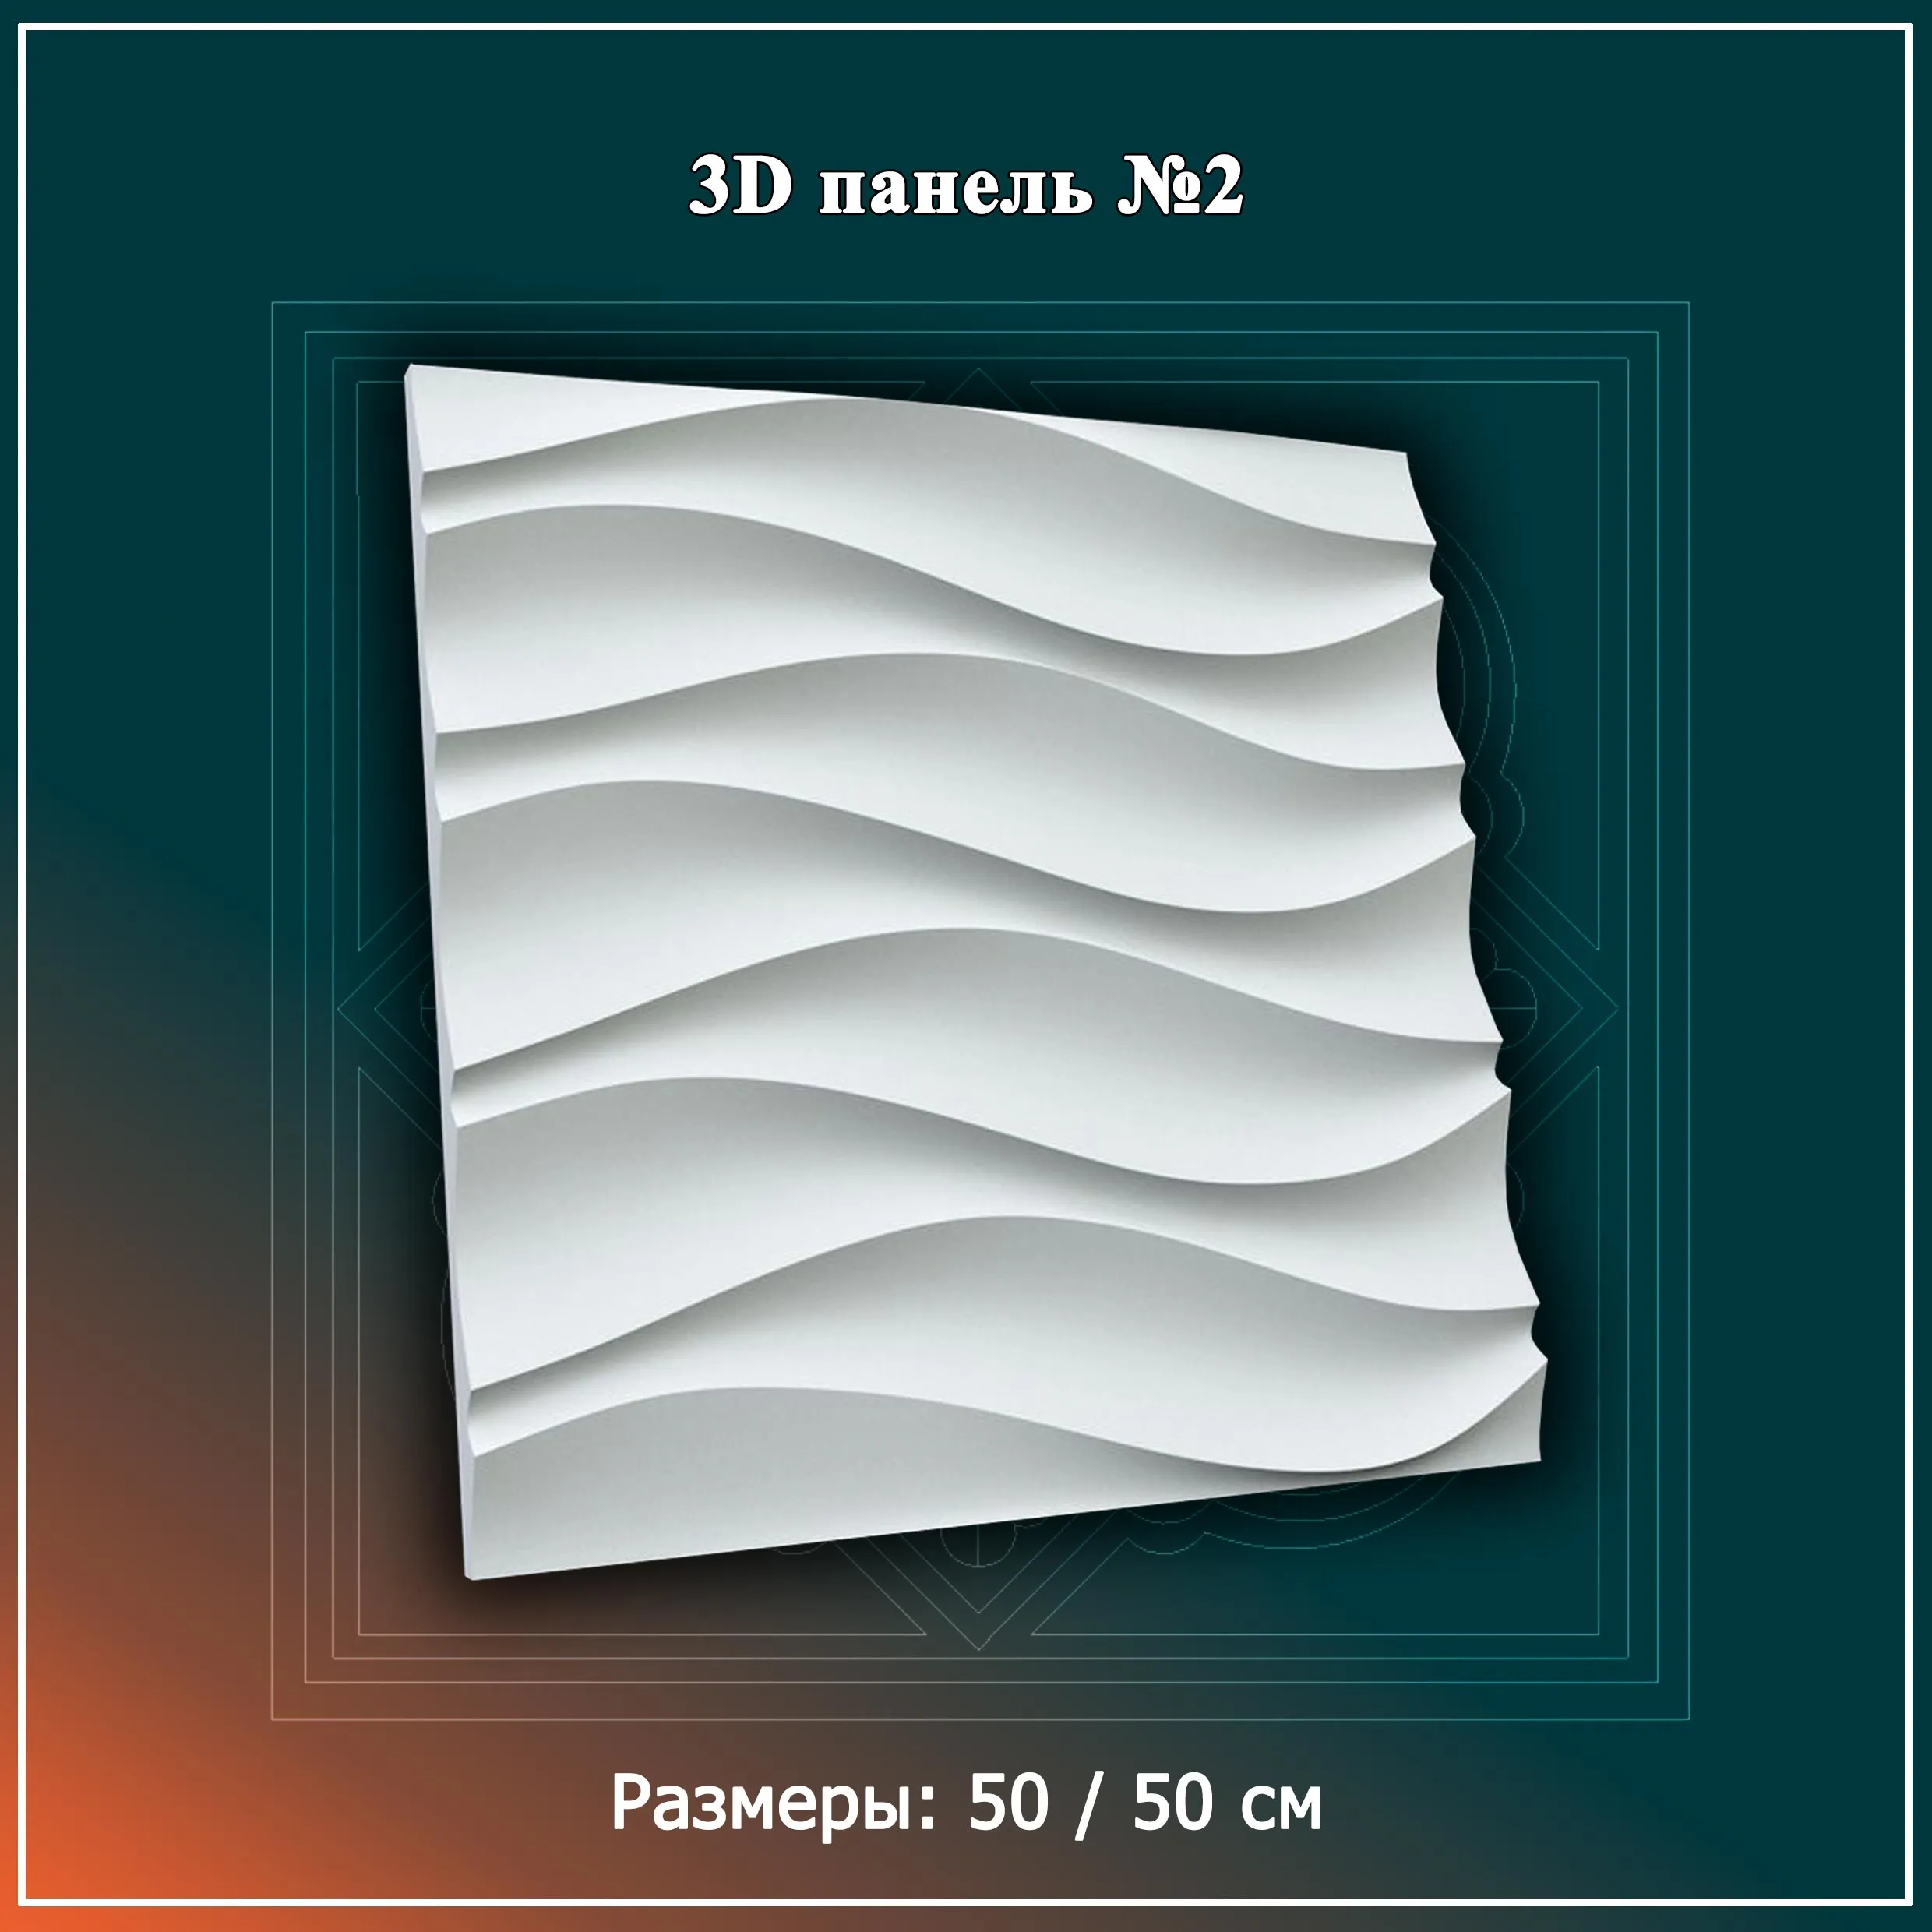 3D Панель №2 Размеры: 50 / 50 см#1